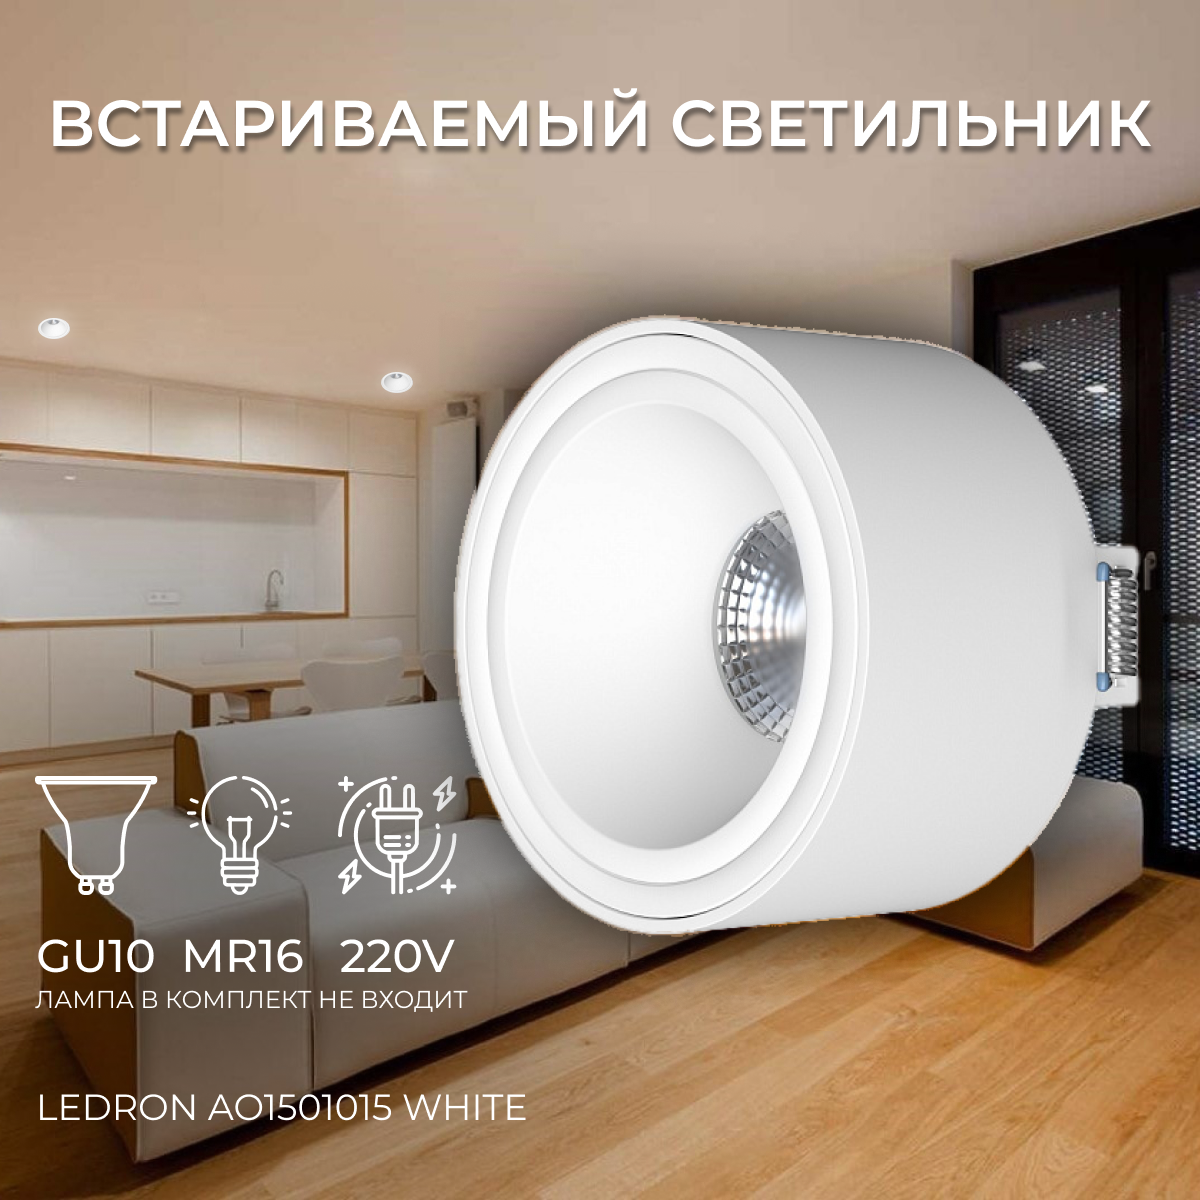 Встраиваемый потолочный светильник под сменную лампу, спот потолочный Ledron AO1501015 White